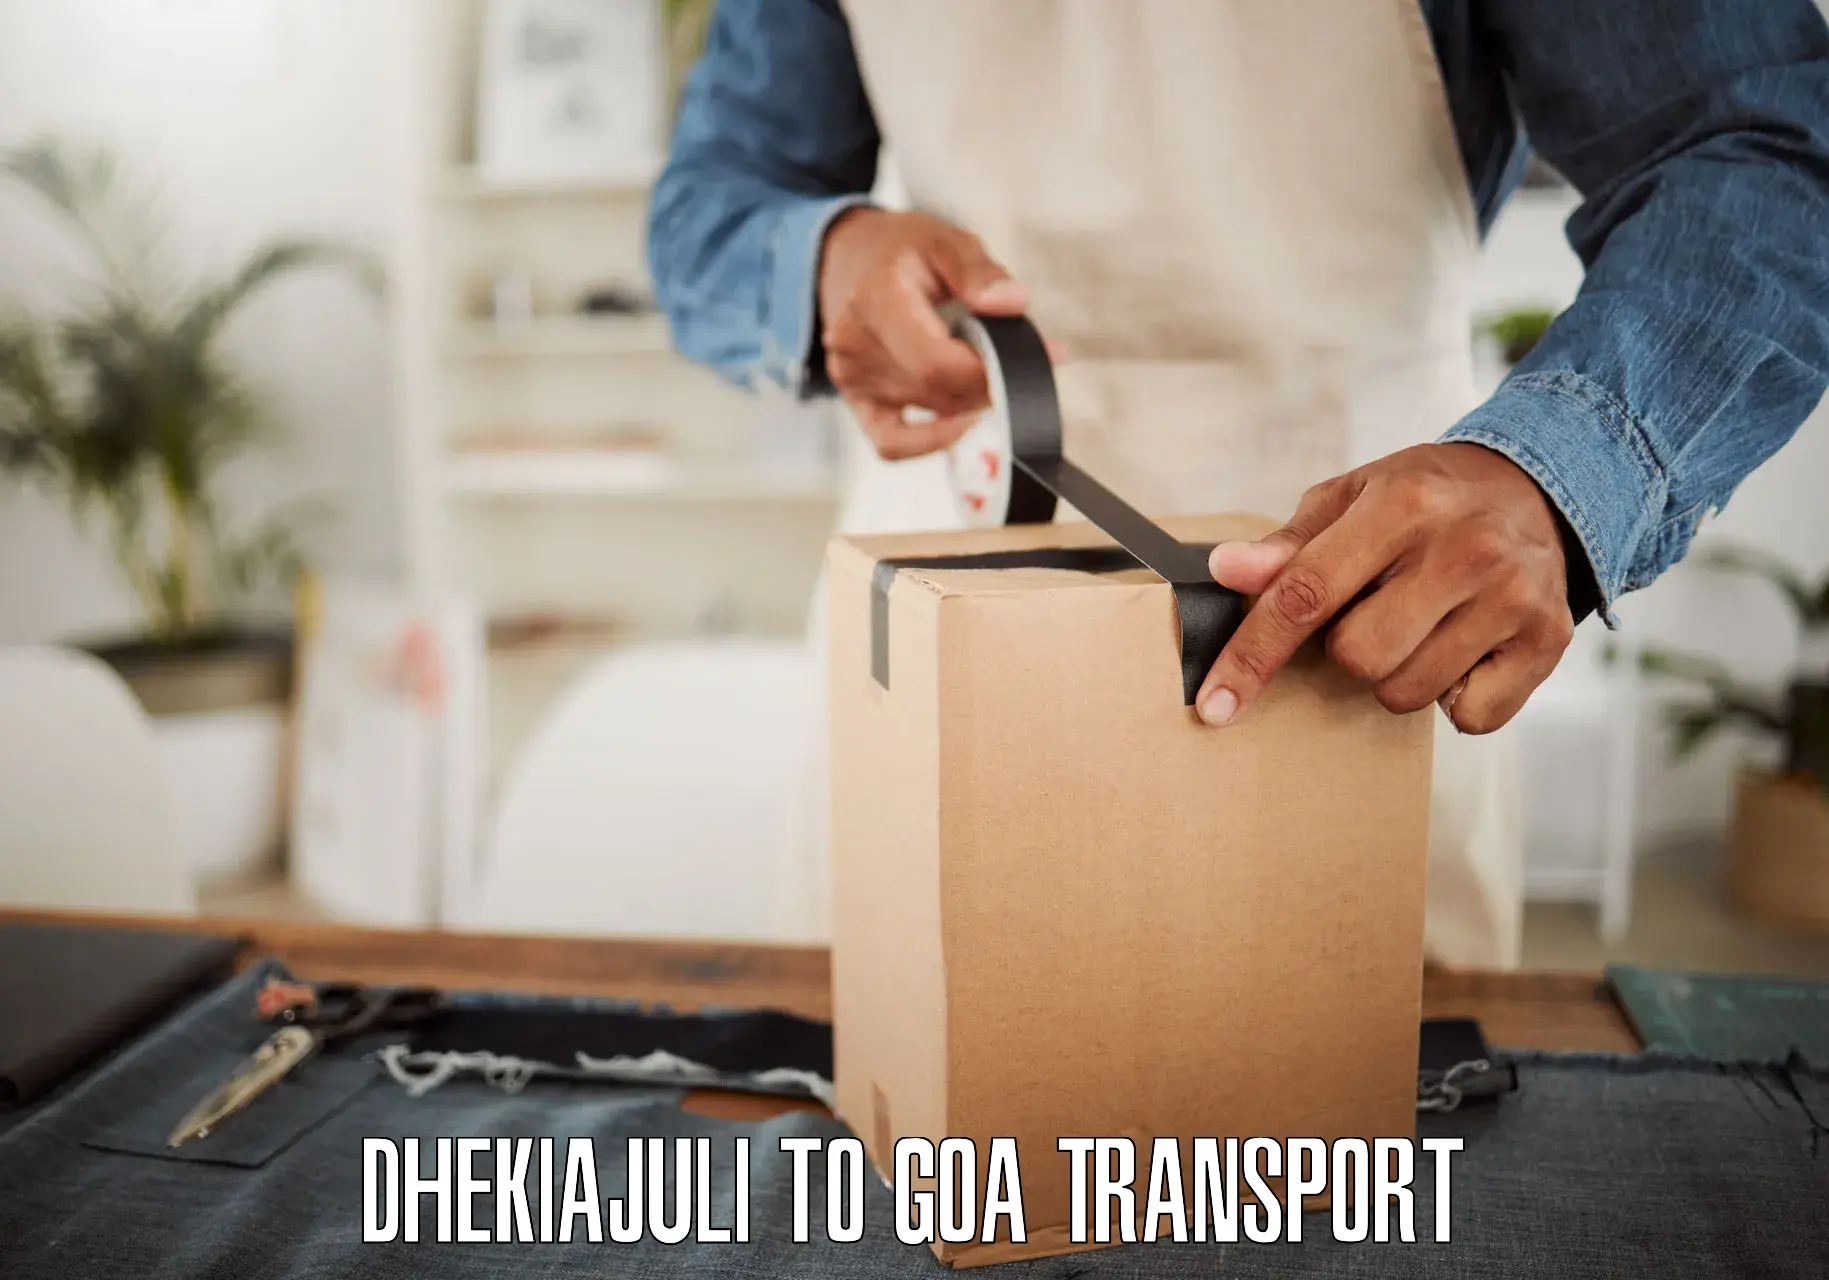 Online transport booking Dhekiajuli to NIT Goa